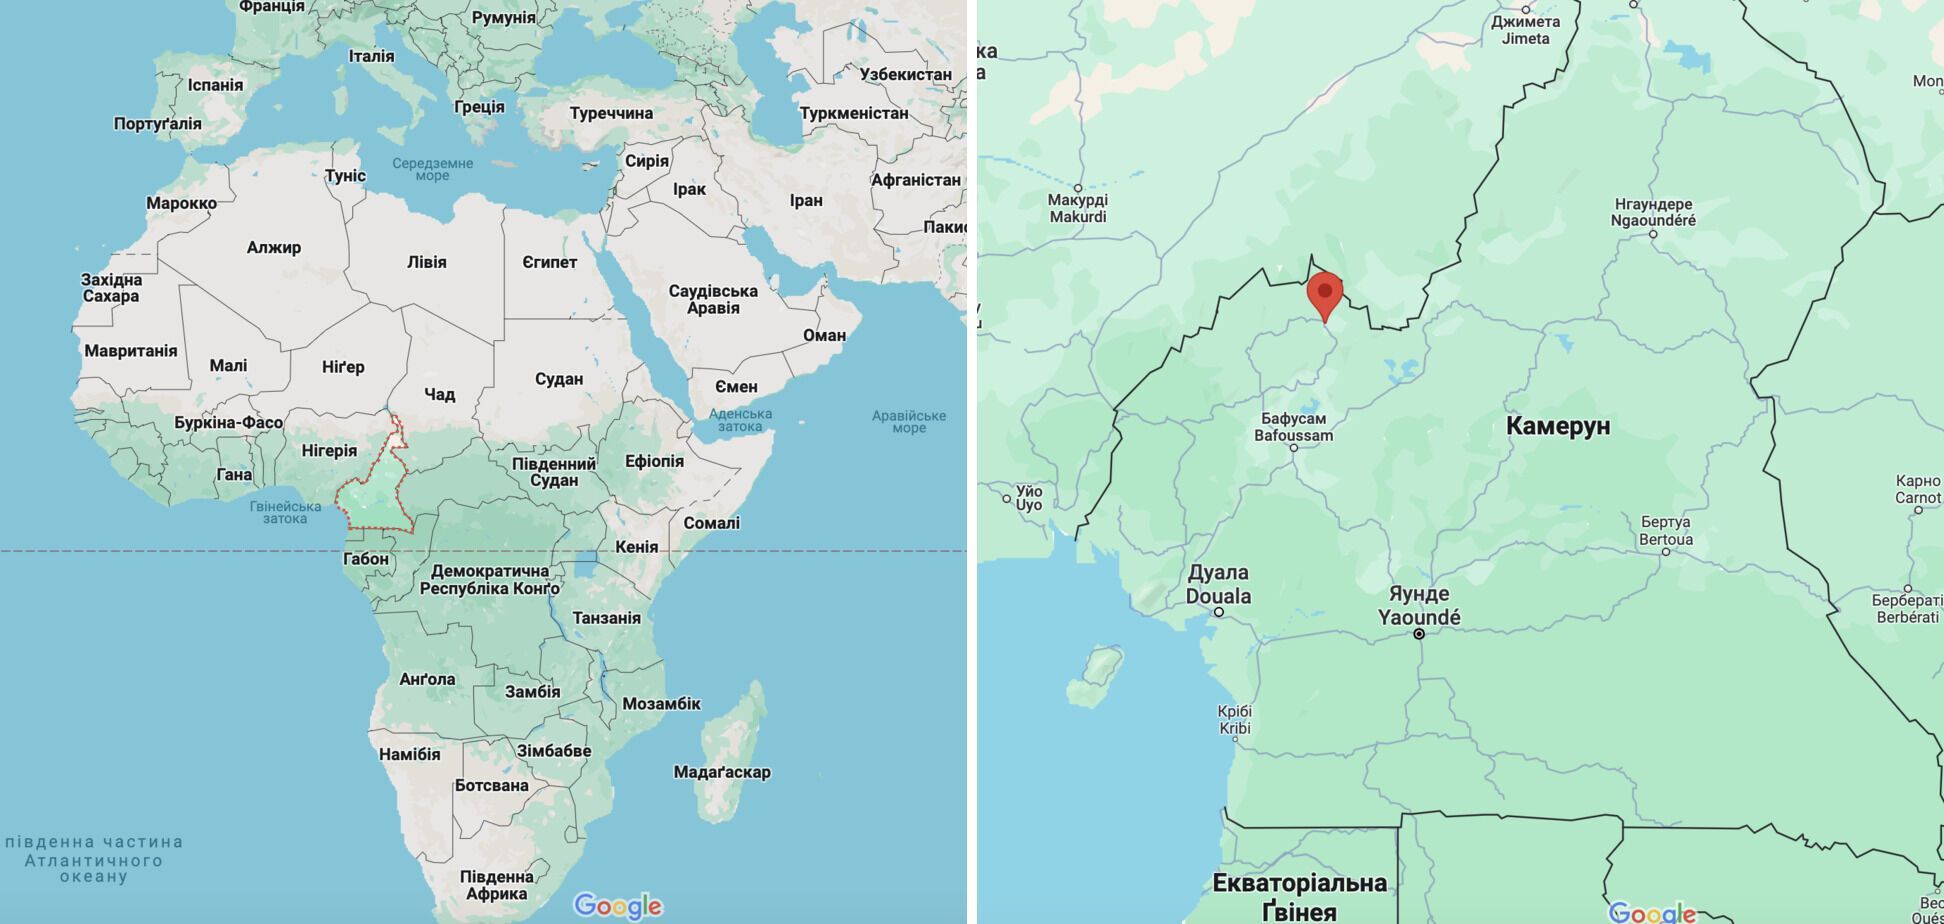 В Камеруне произошел теракт: двое школьников погибли, еще 20 получили ранения